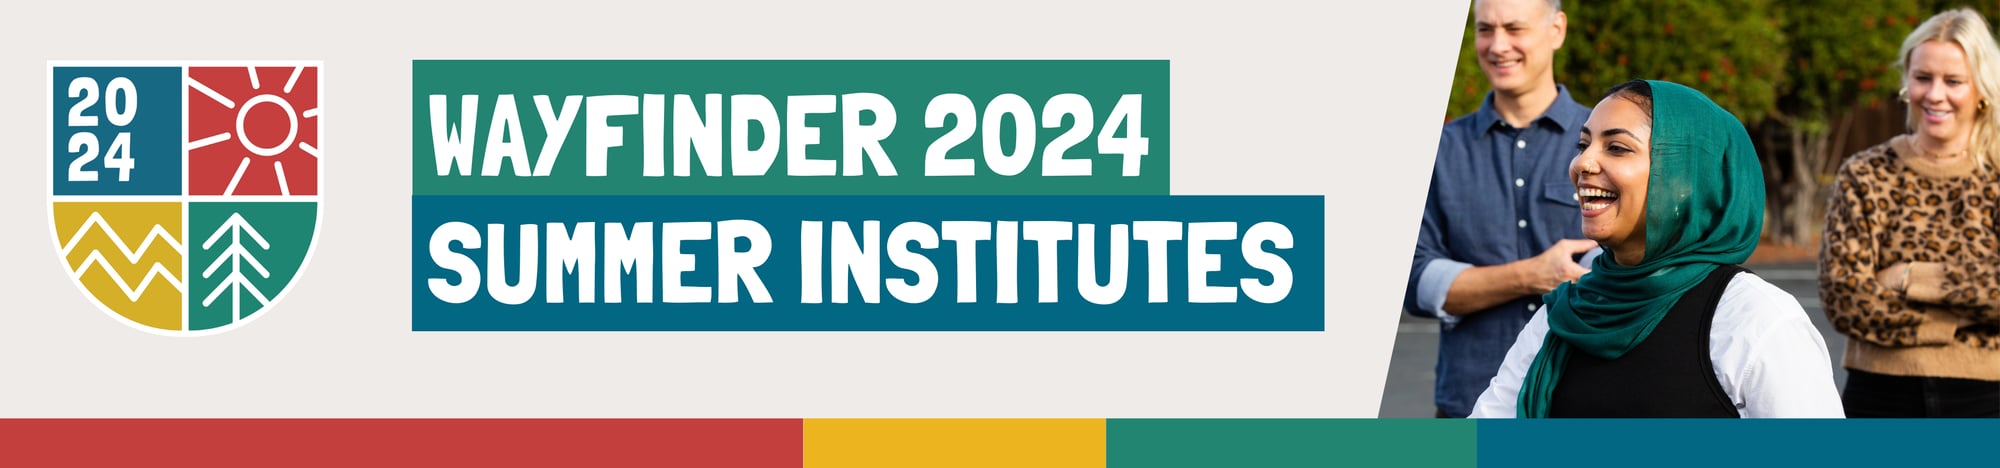 Wayfinder 2024 Summer Institute Banner 